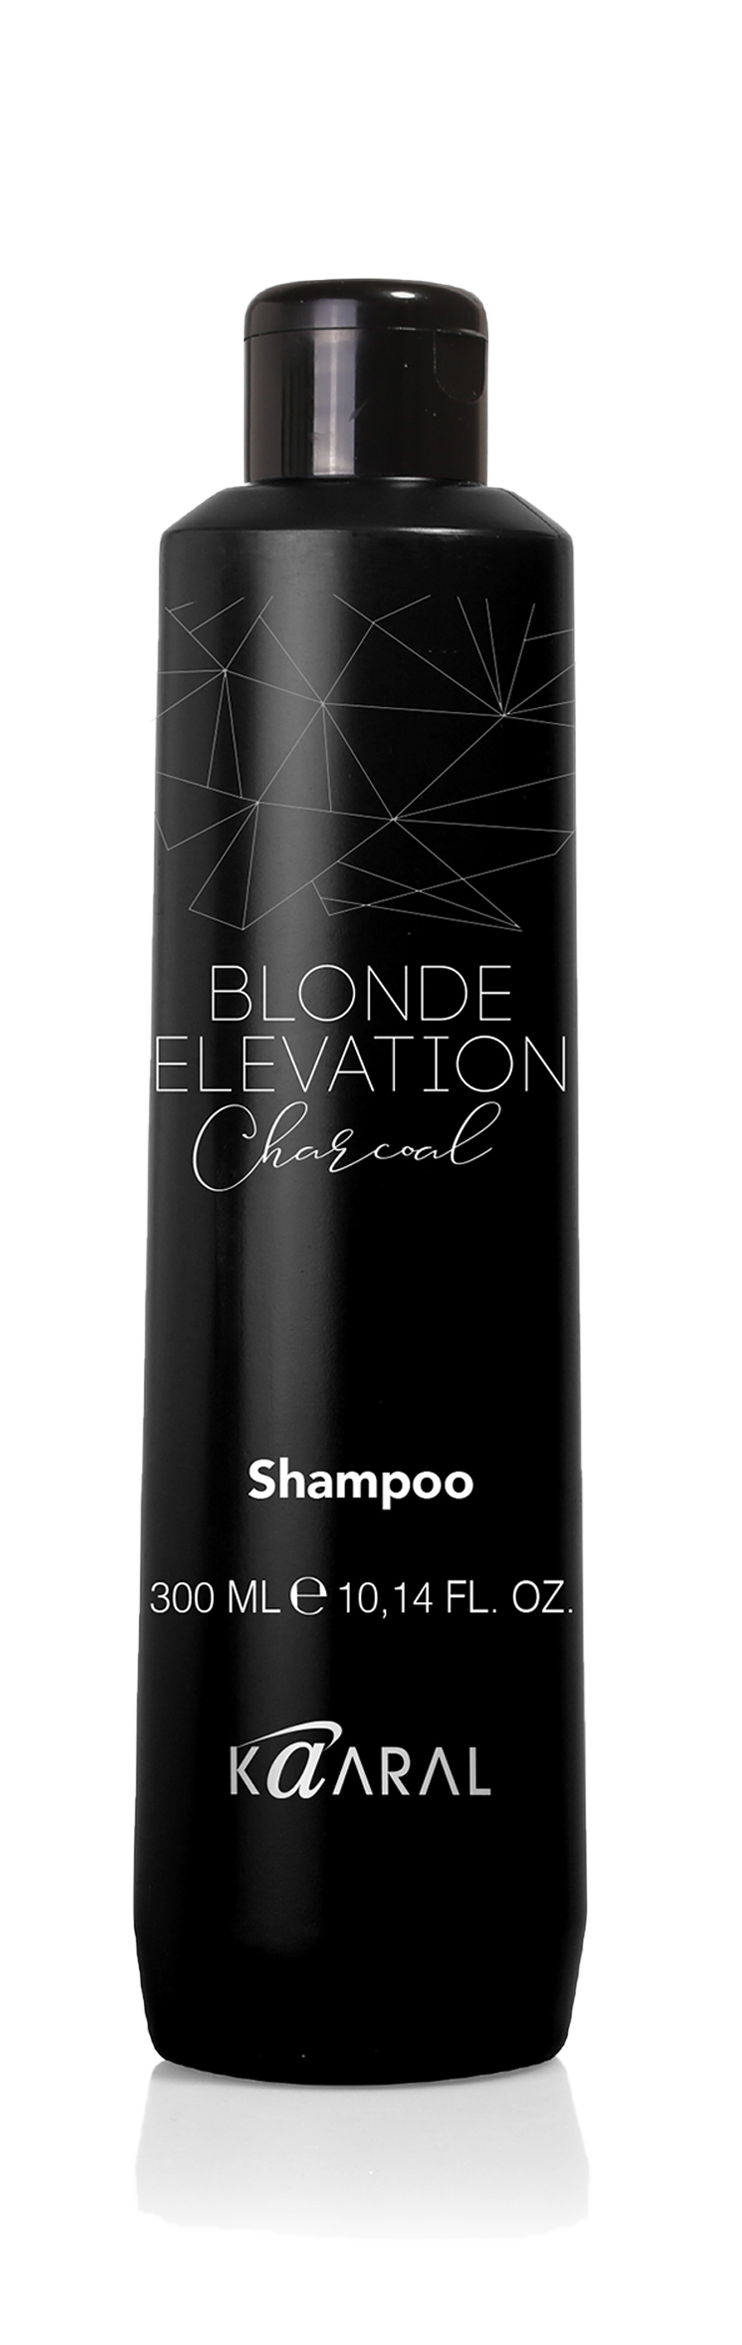 Charcoal shampoo